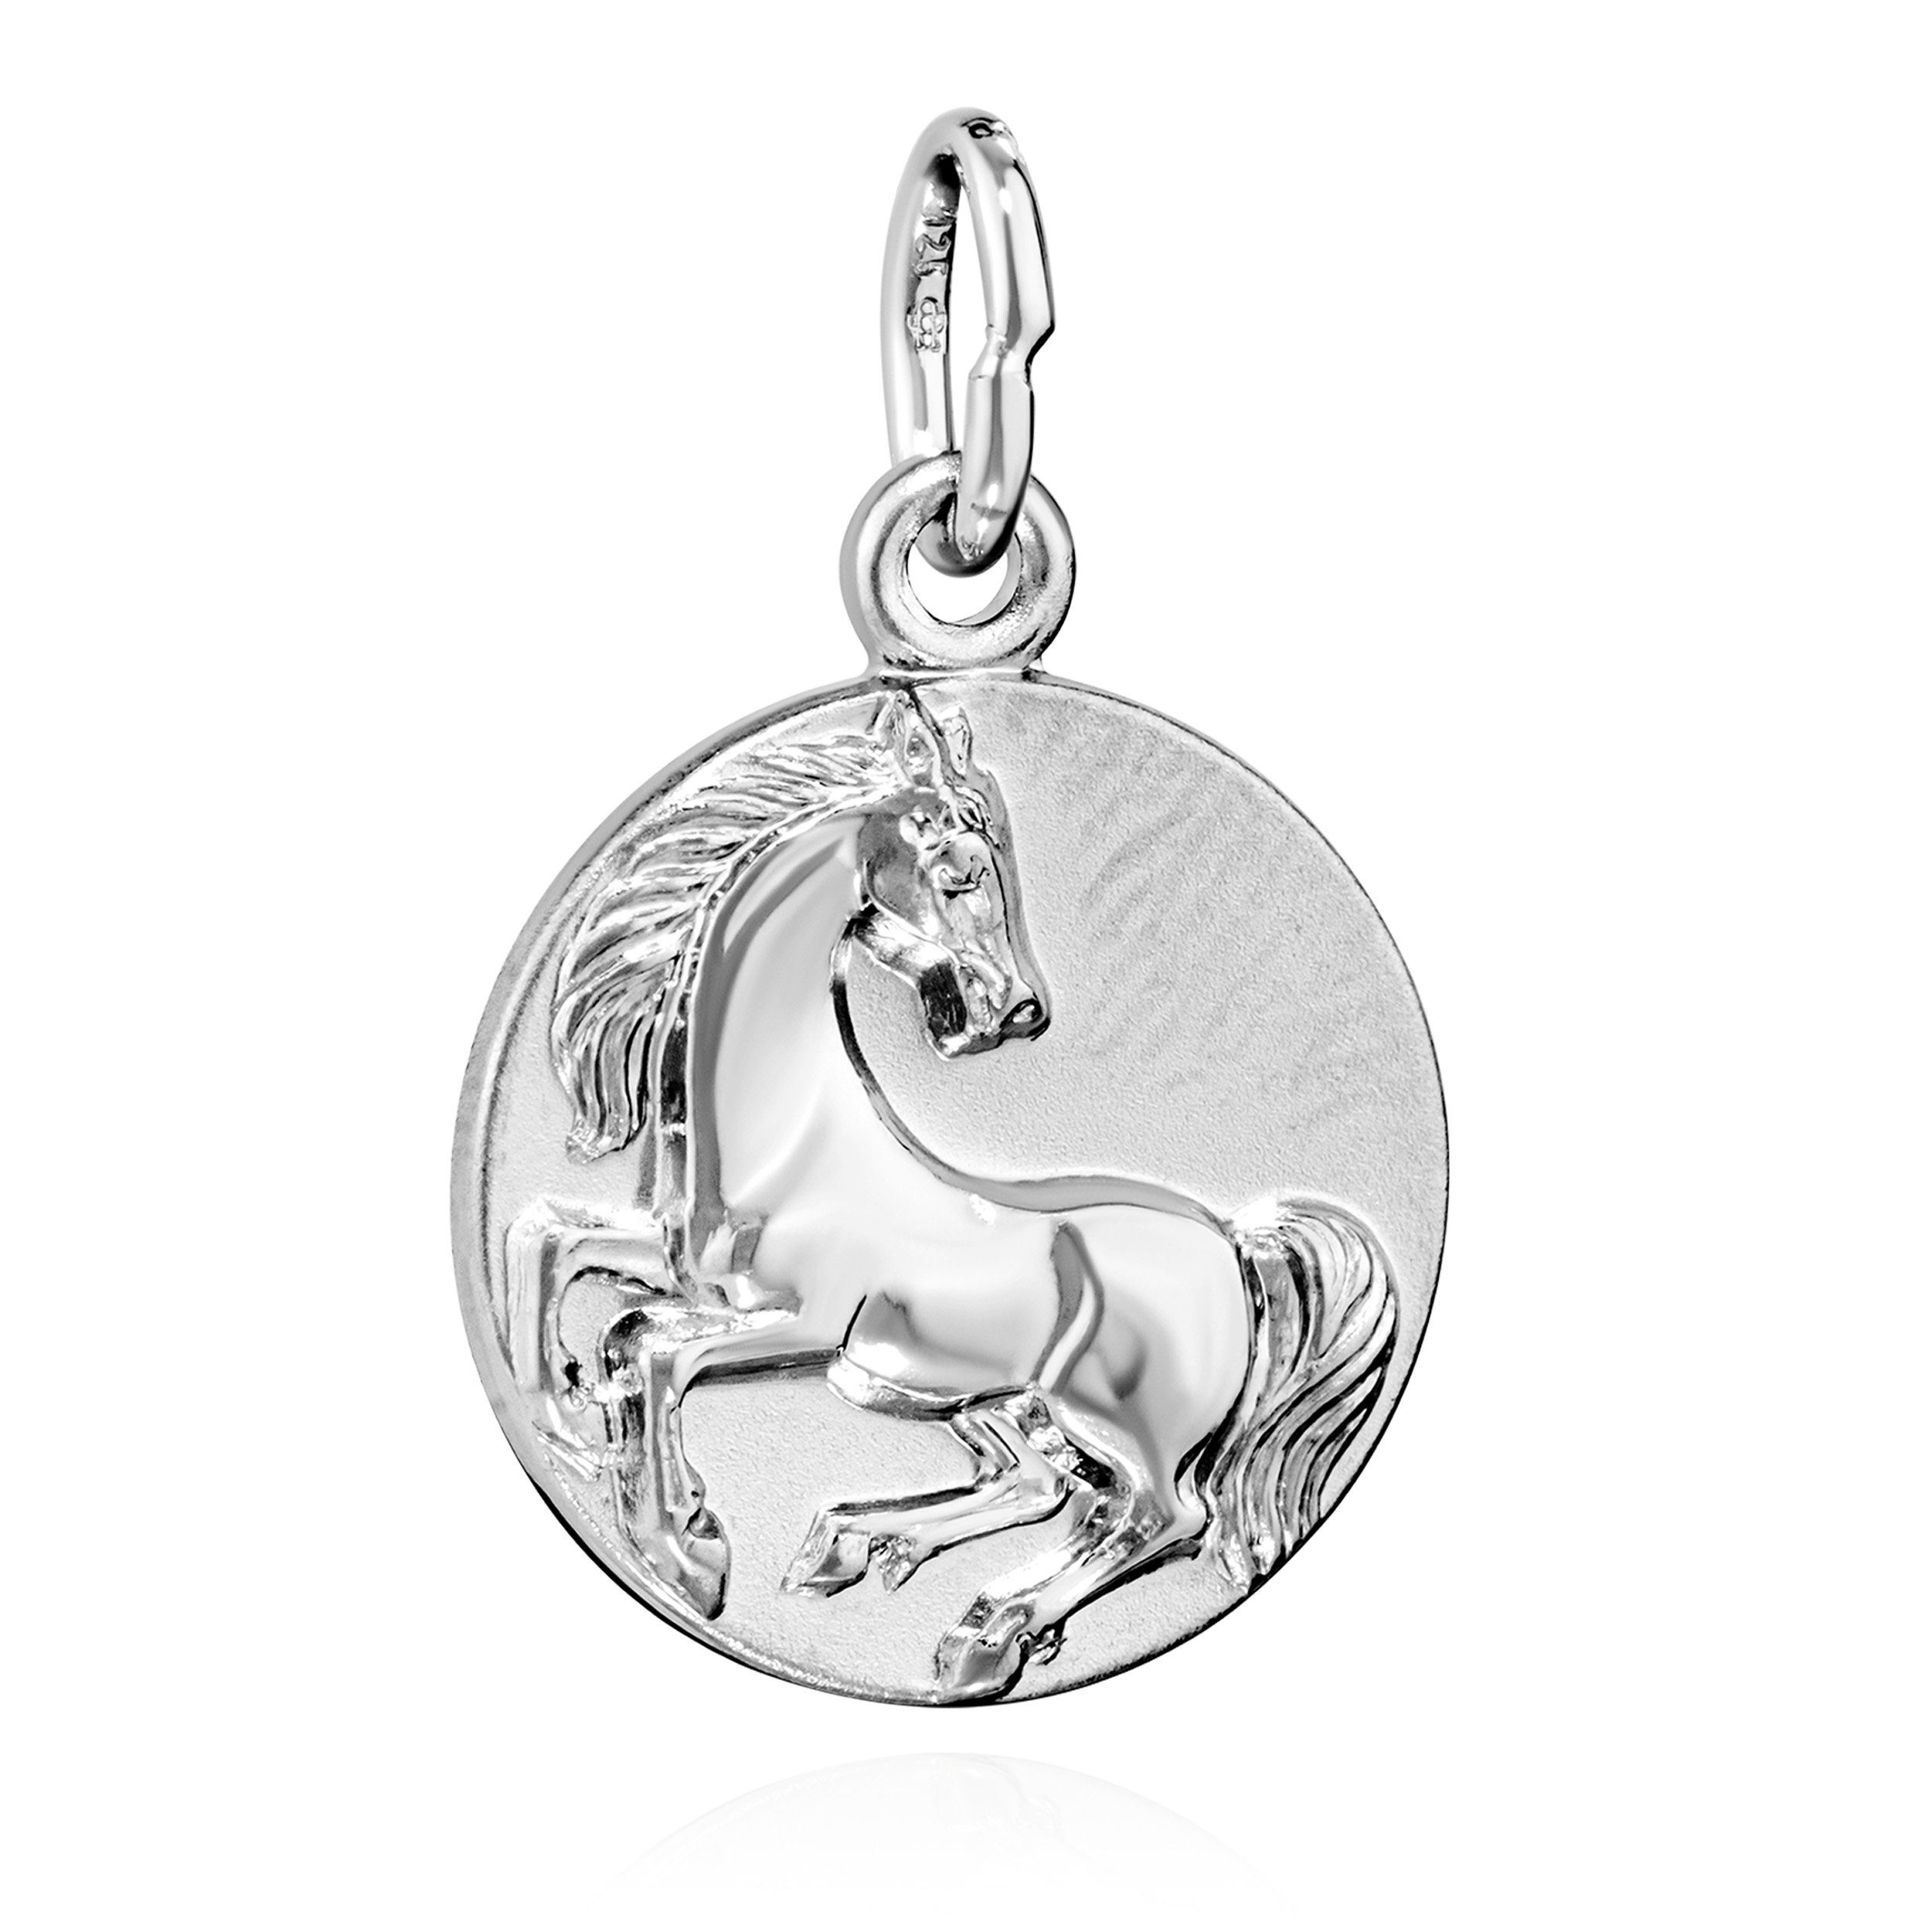 NKlaus Kettenanhänger Pferd im Lauf 12mm rund 925 Silber Ananhänger Hengst glanz-gesandelt r | Kettenanhänger